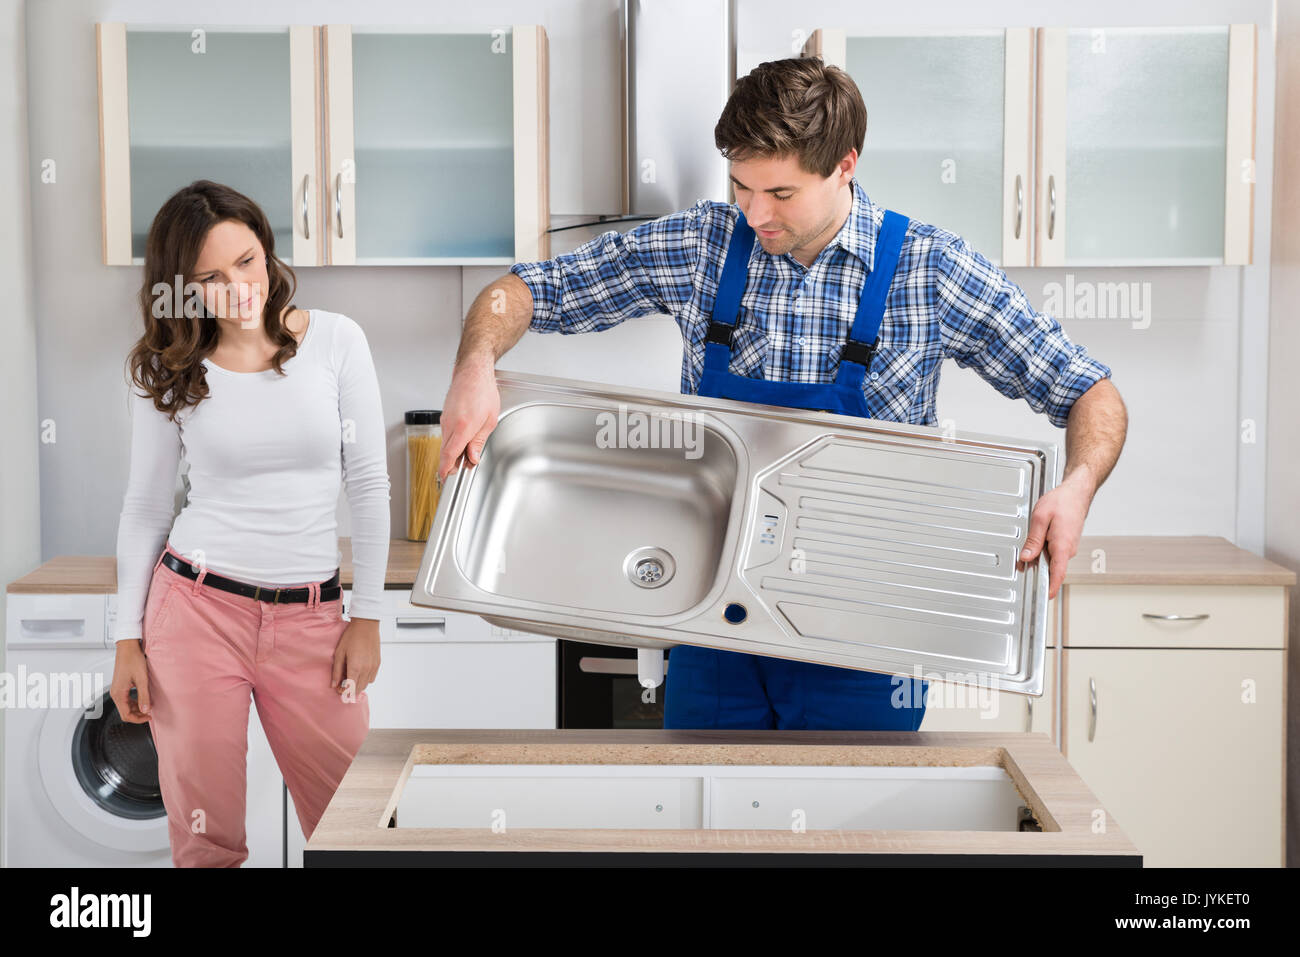 Junge Frau mit männlichen Arbeitnehmers Ausführung Edelstahl Spülbecken in der Küche Stockfoto